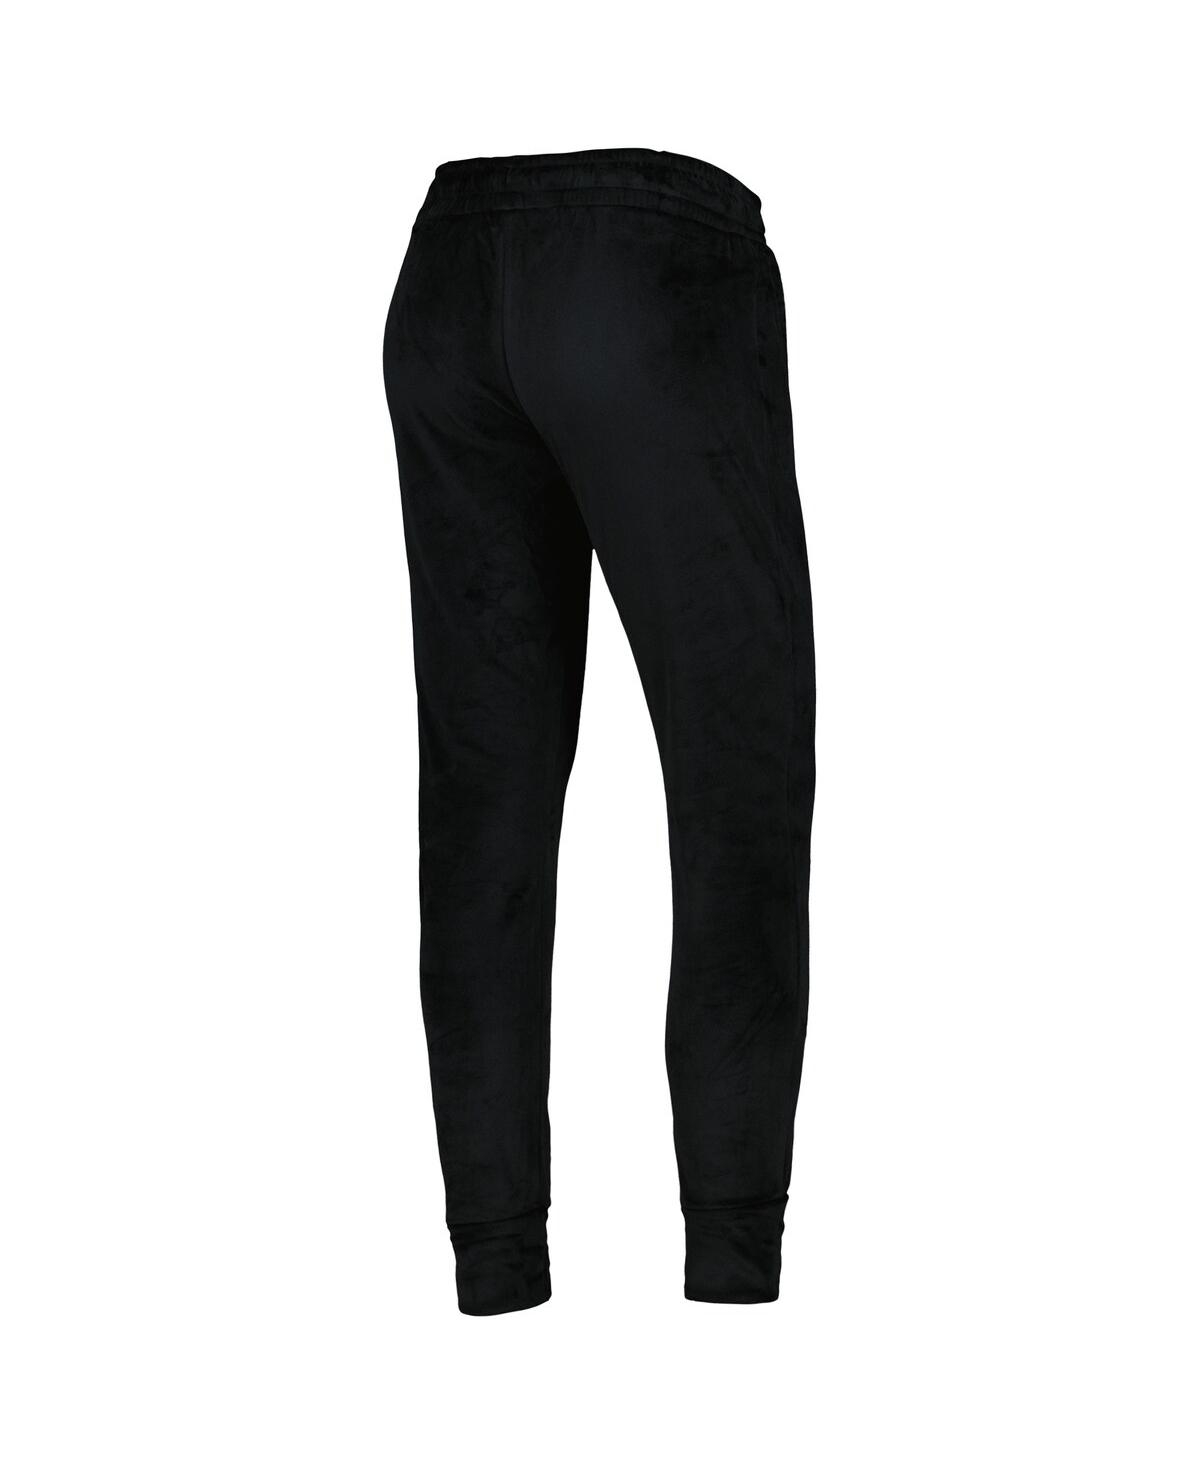 Shop Concepts Sport Women's  Black Charlotte Fc Intermission Velour Cuffed Pants